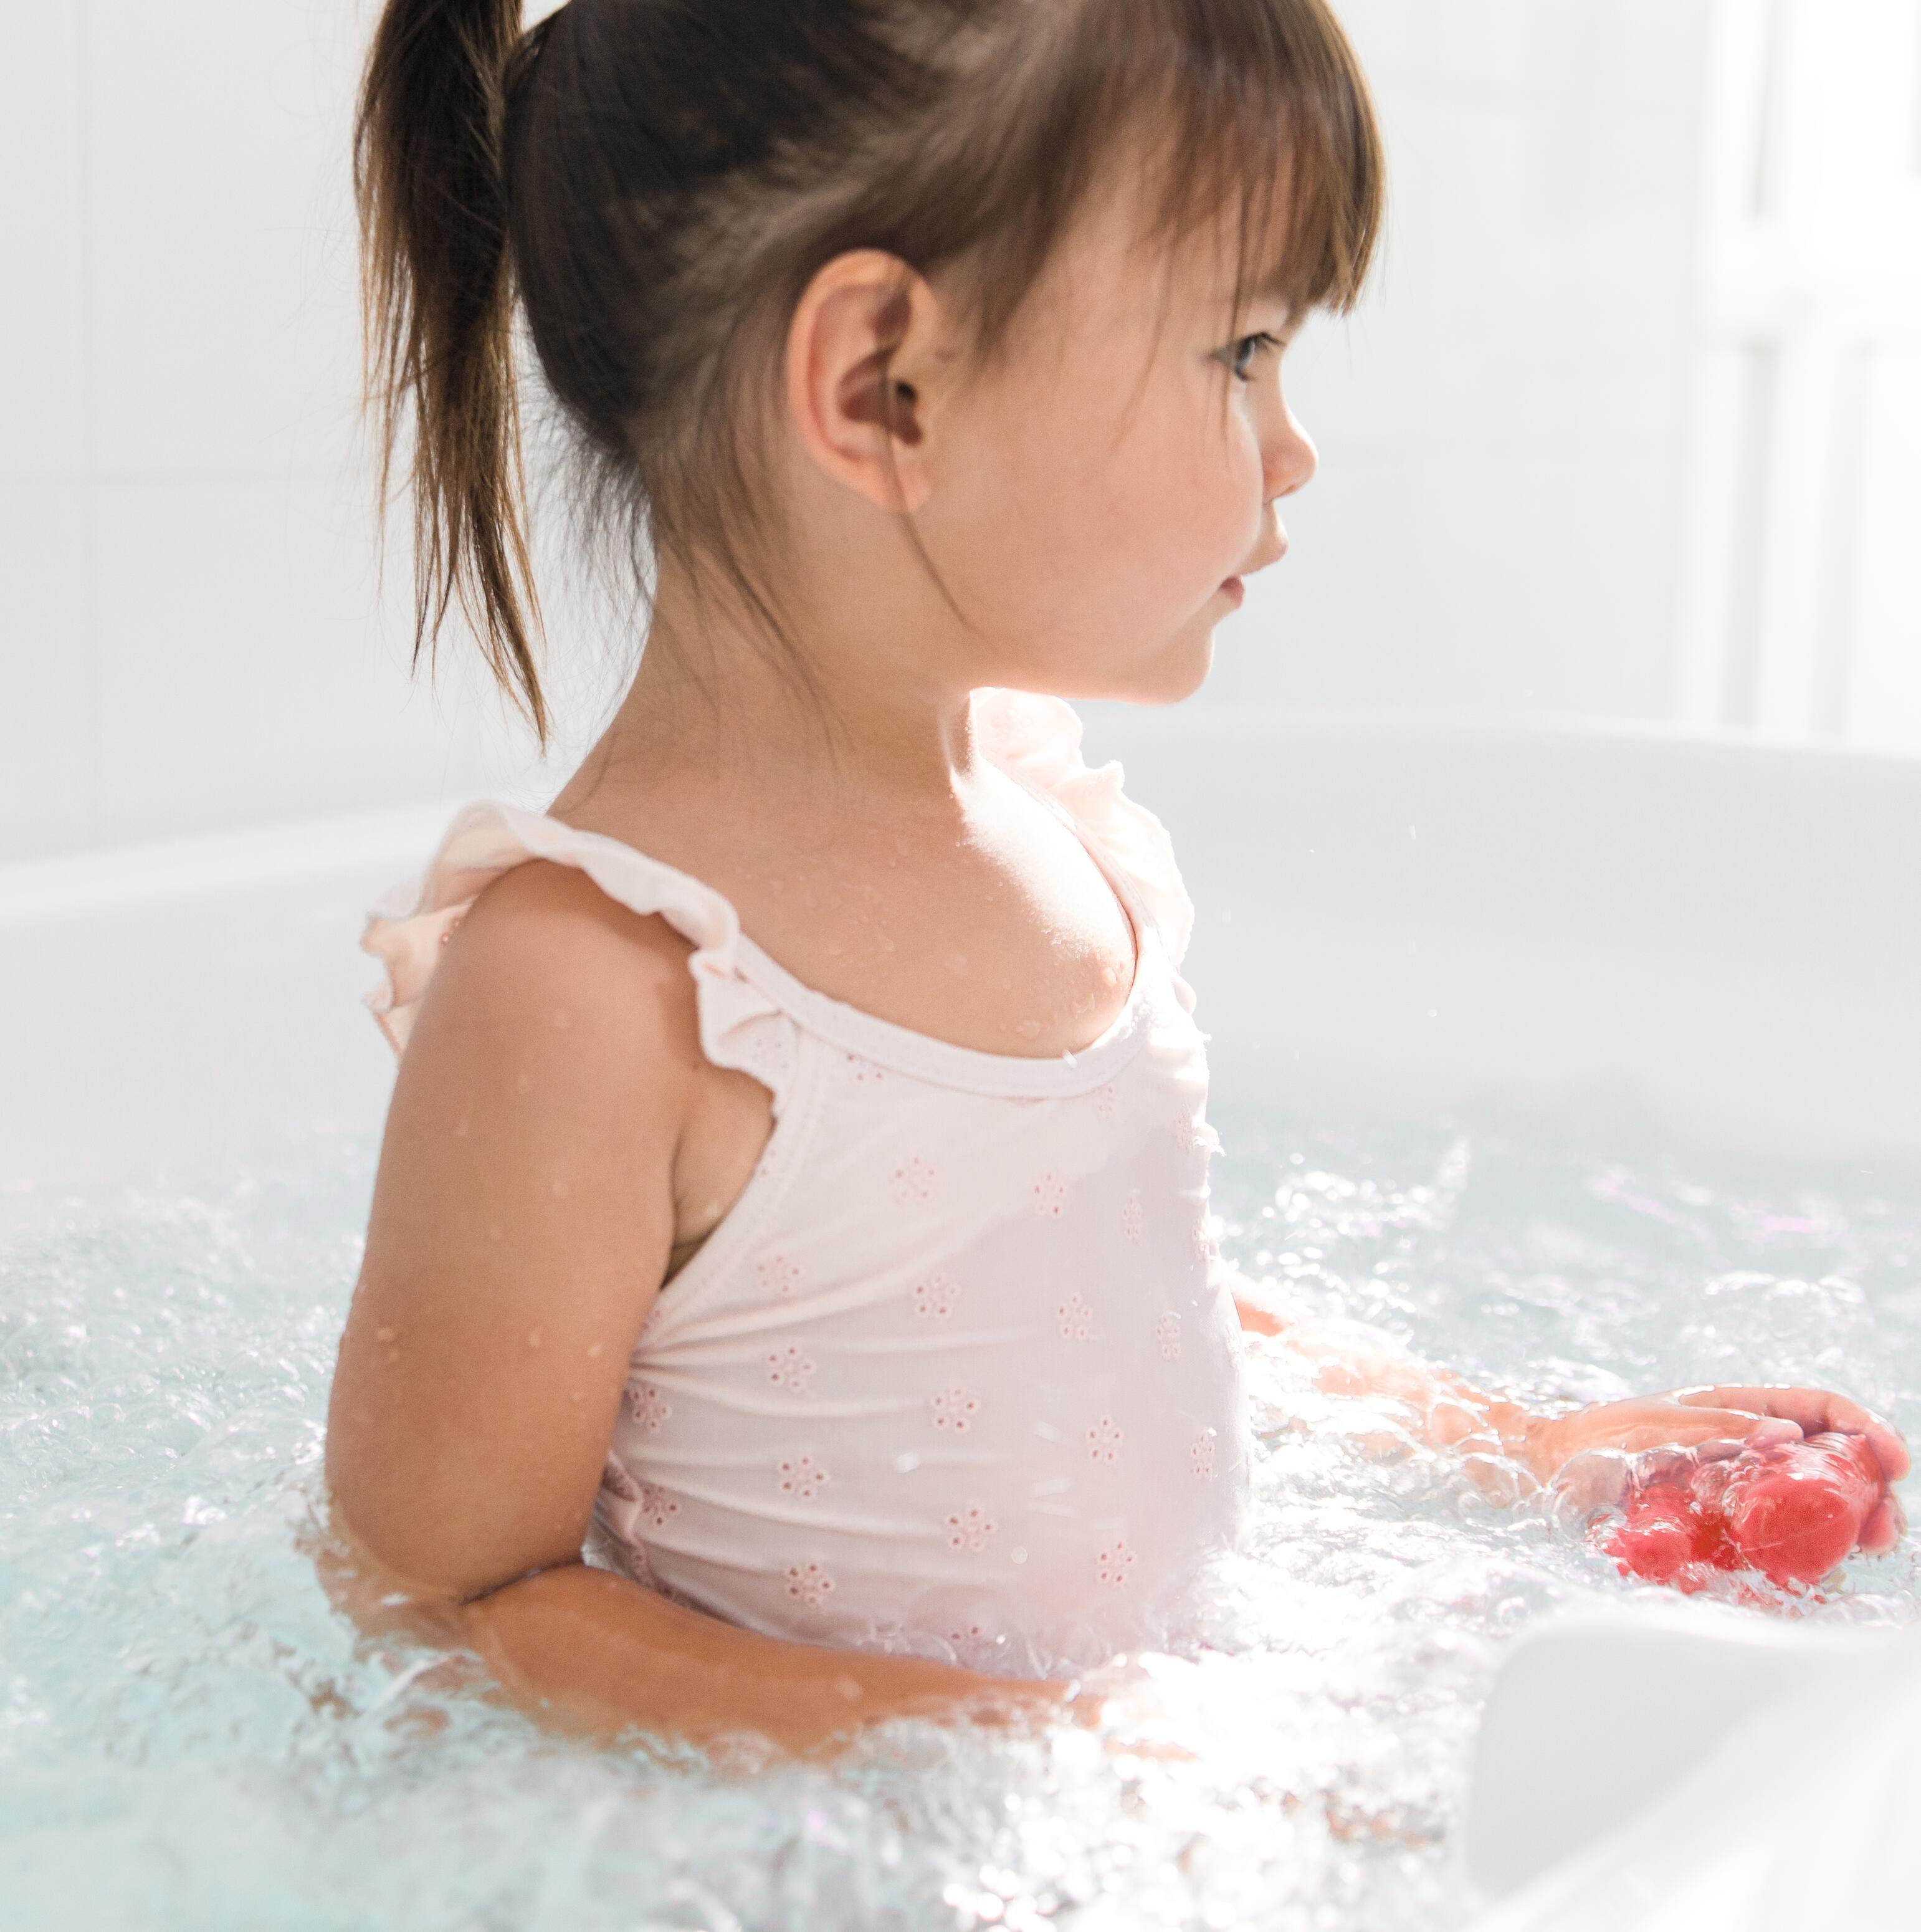 Eczeem, psoriasis: mag mijn kind in bad?